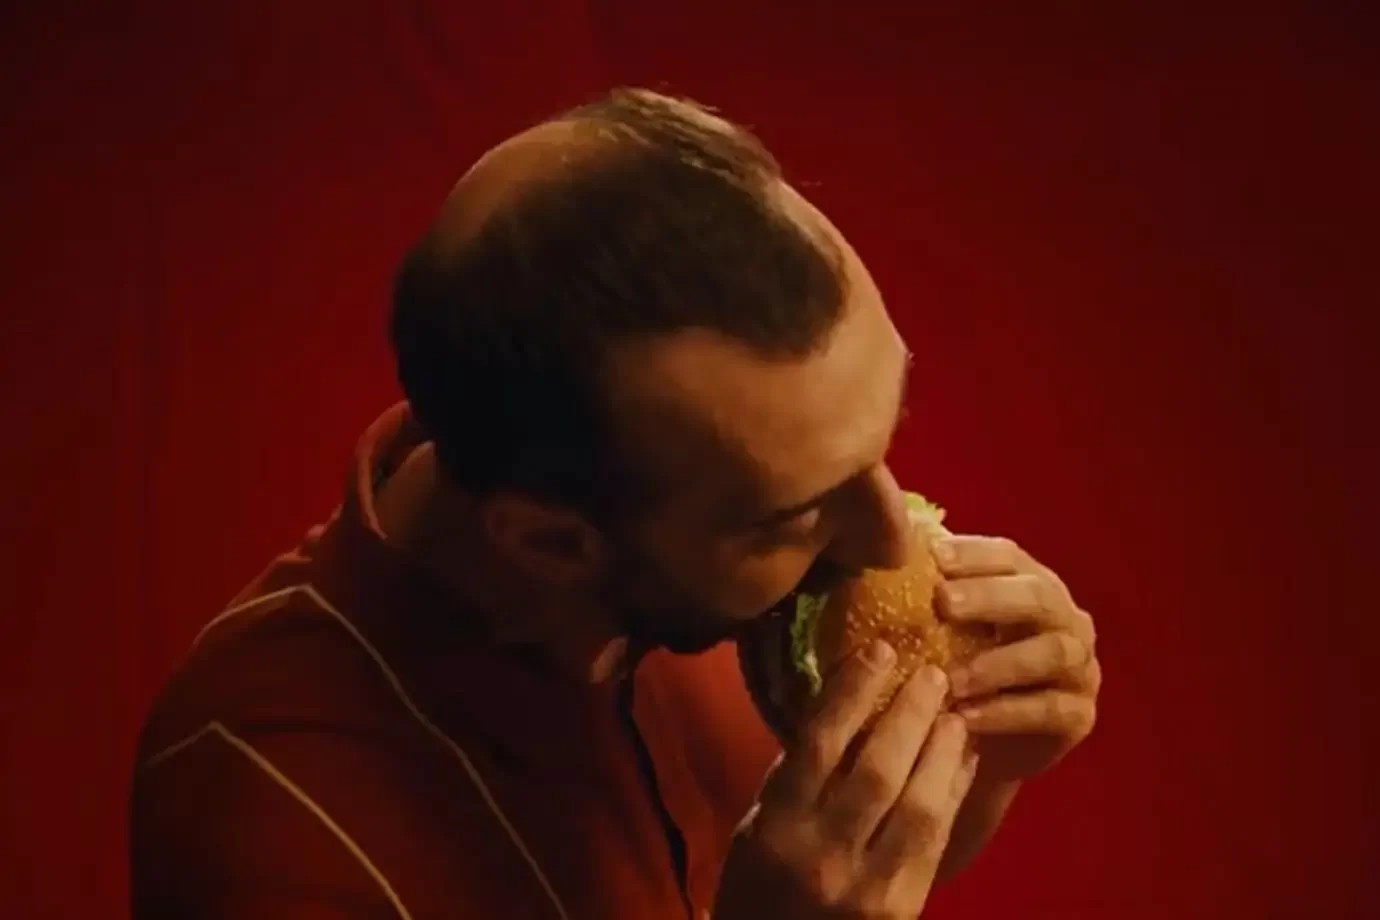 'Uma surpresa': Burger King diz que distribuiu 500 mil hambúrgueres para carecas em 4 dias